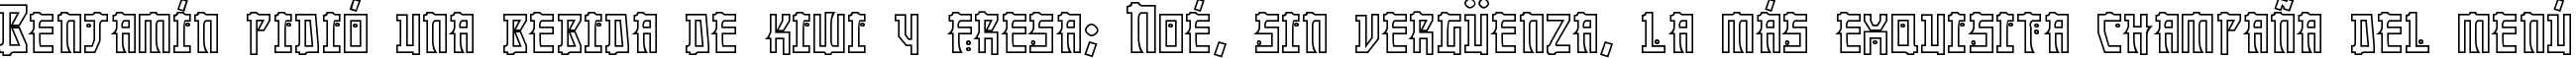 Пример написания шрифтом Manga Hollow текста на испанском